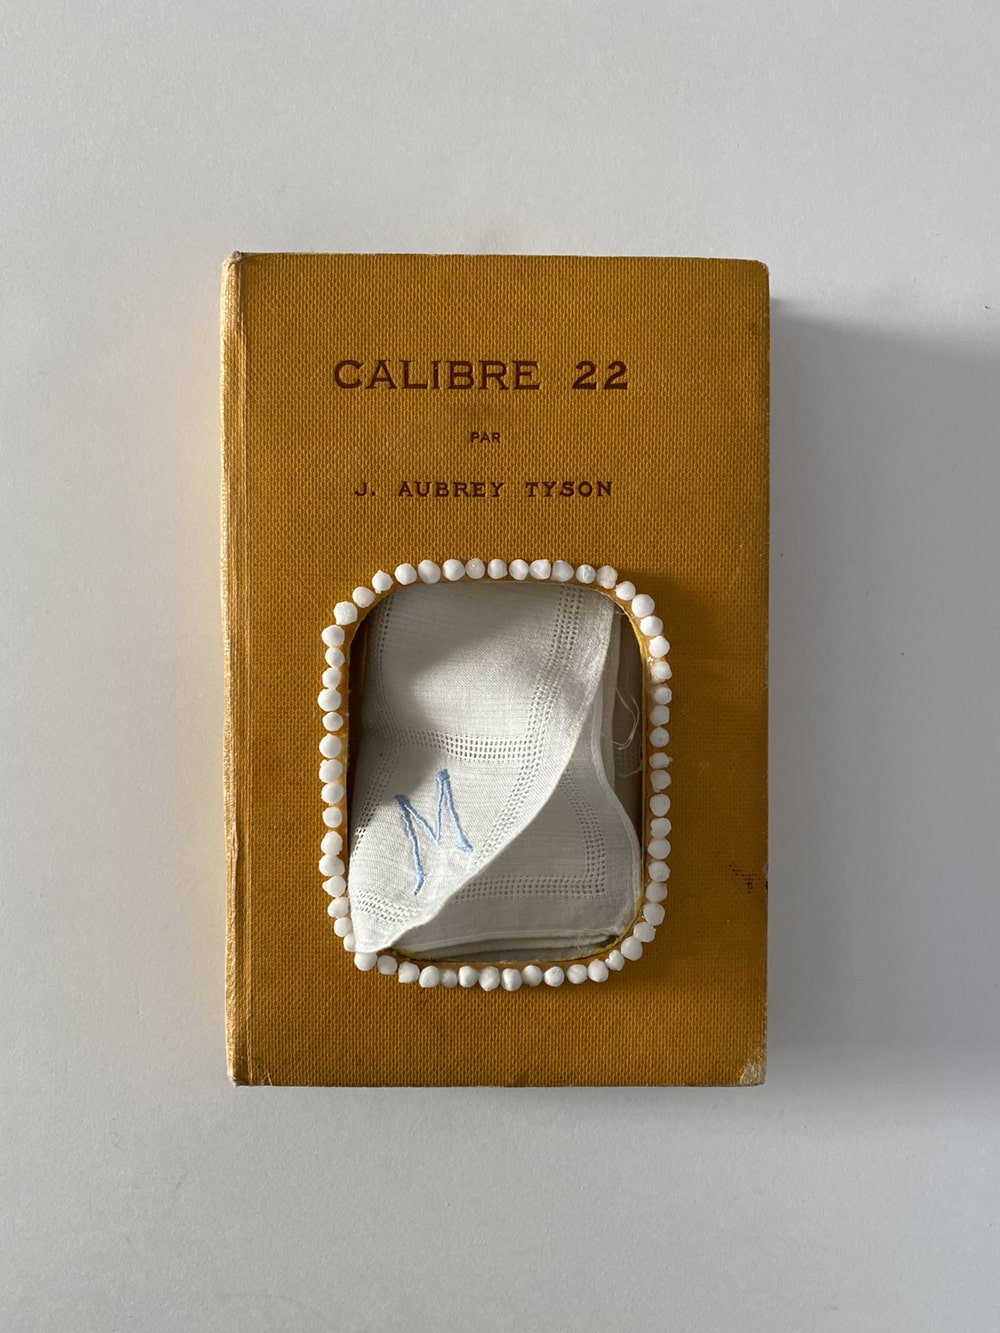 tissue book project Calibre 22 1